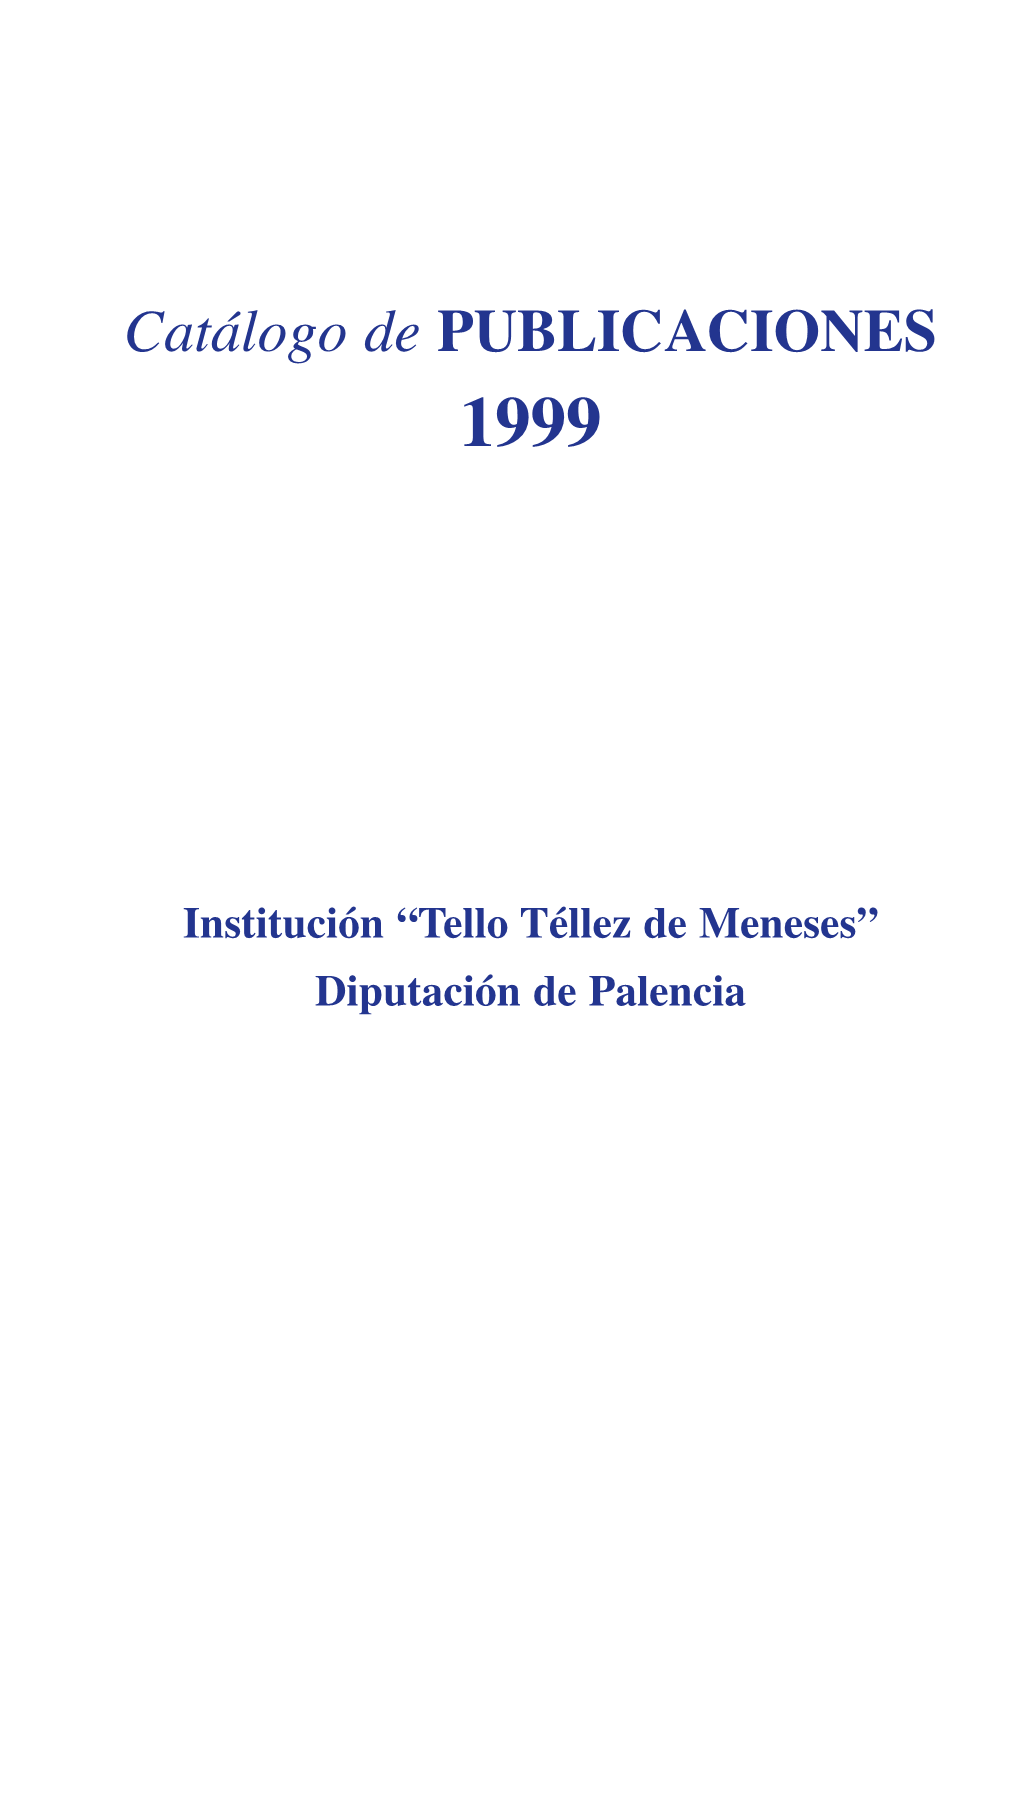 Tello Tellez 3-9-99